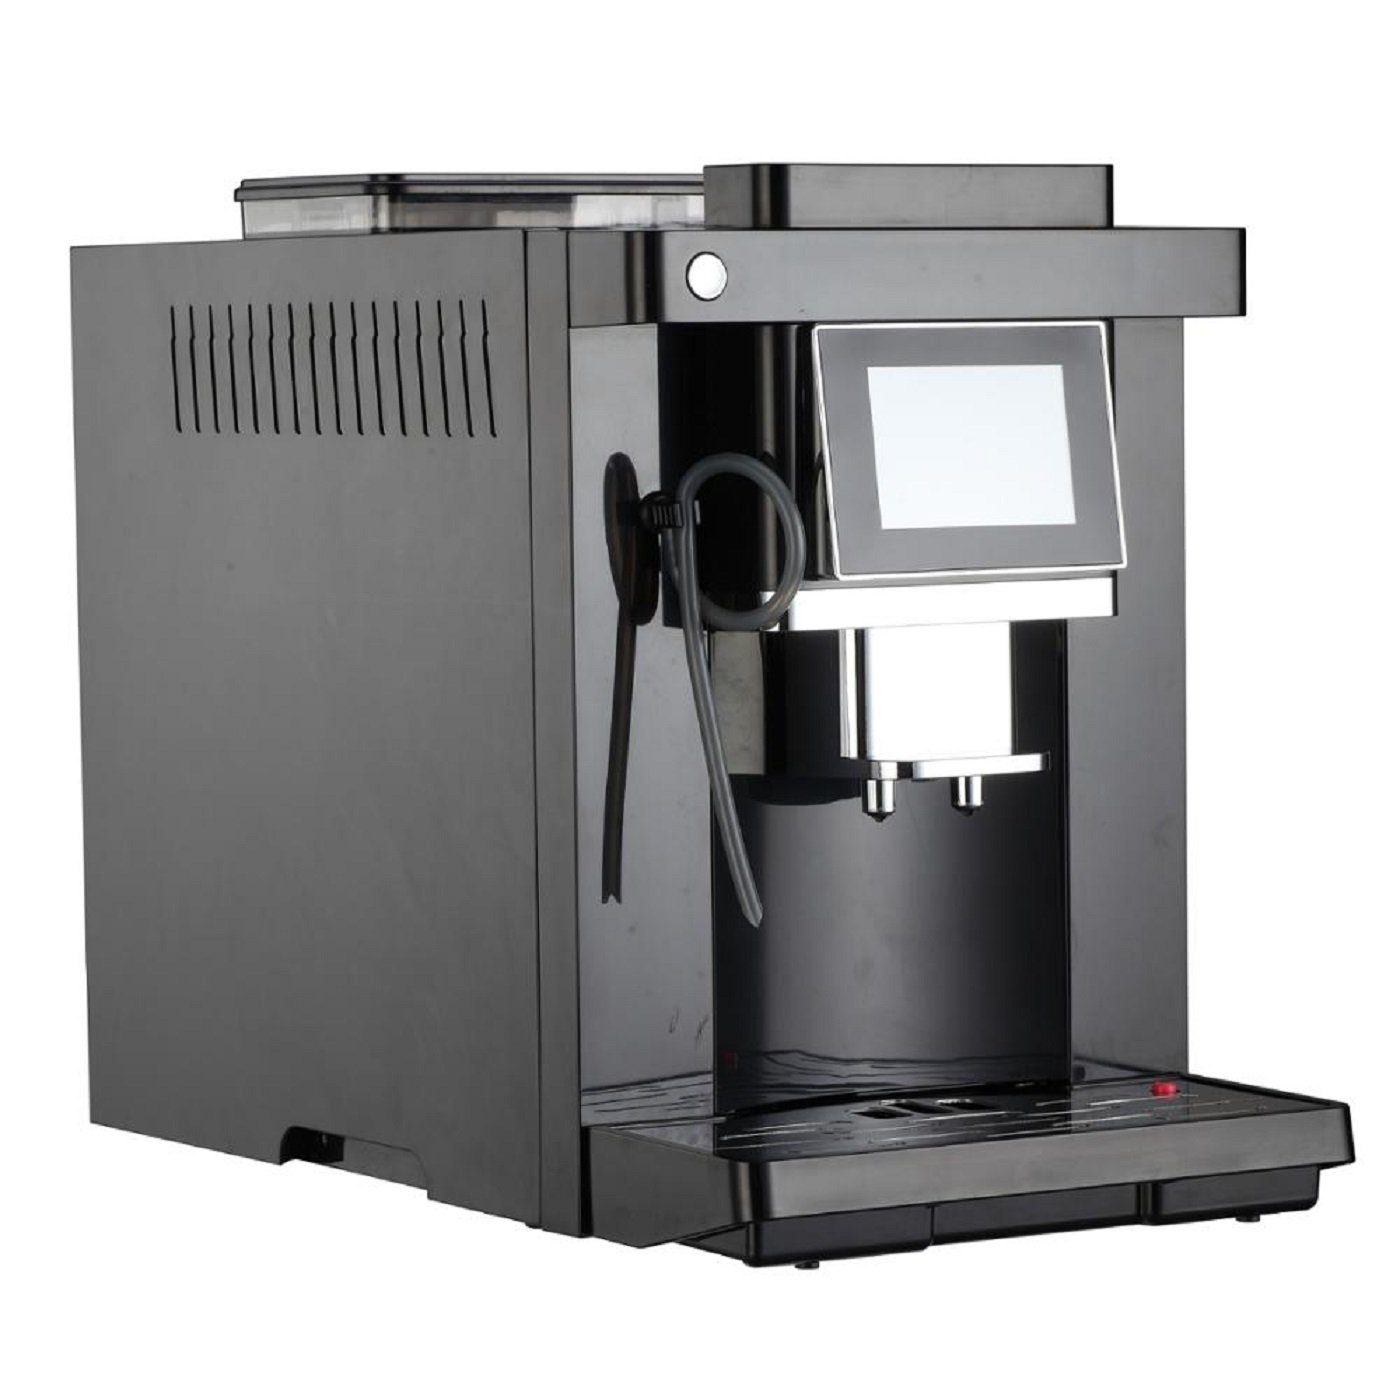 COLET Coffee Maschine Kaffeevollautomat auf Kaffee, Kaffeevollautomat Knopfdruck, Cappuccino, Espresso, Selbstreinigungsfunktion CLT-Q007